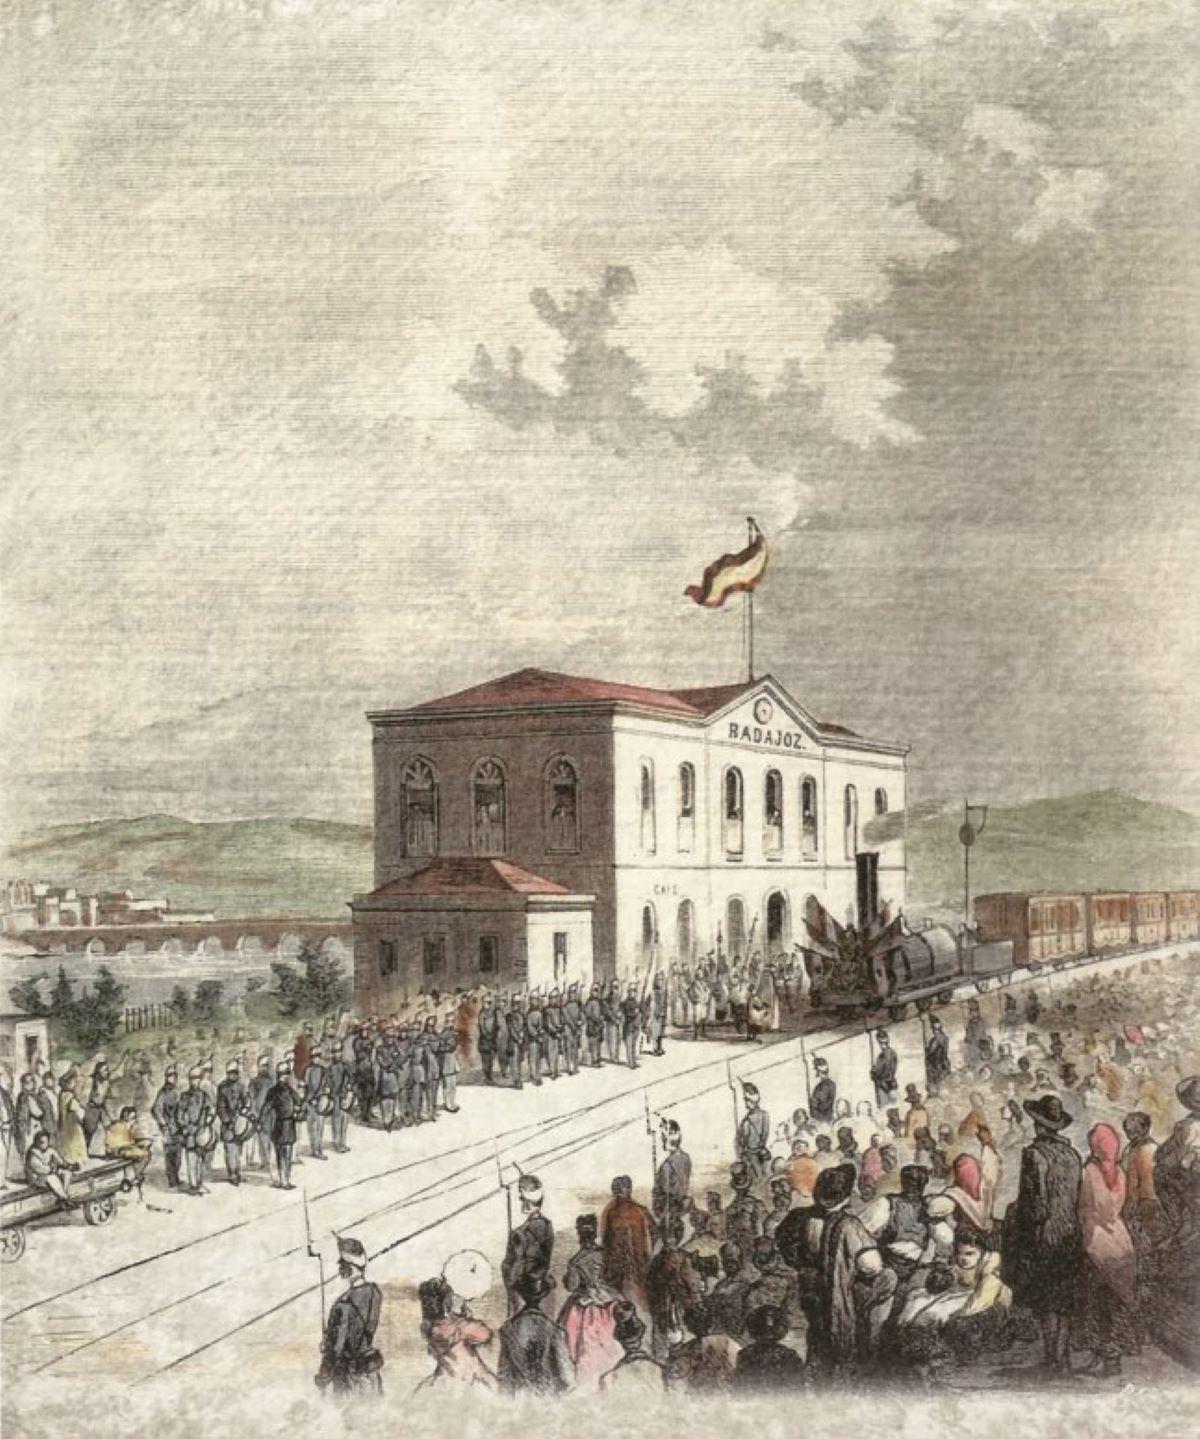 Xilografía de Bernardo Rico con la llegada del tren a la estación de Badajoz.